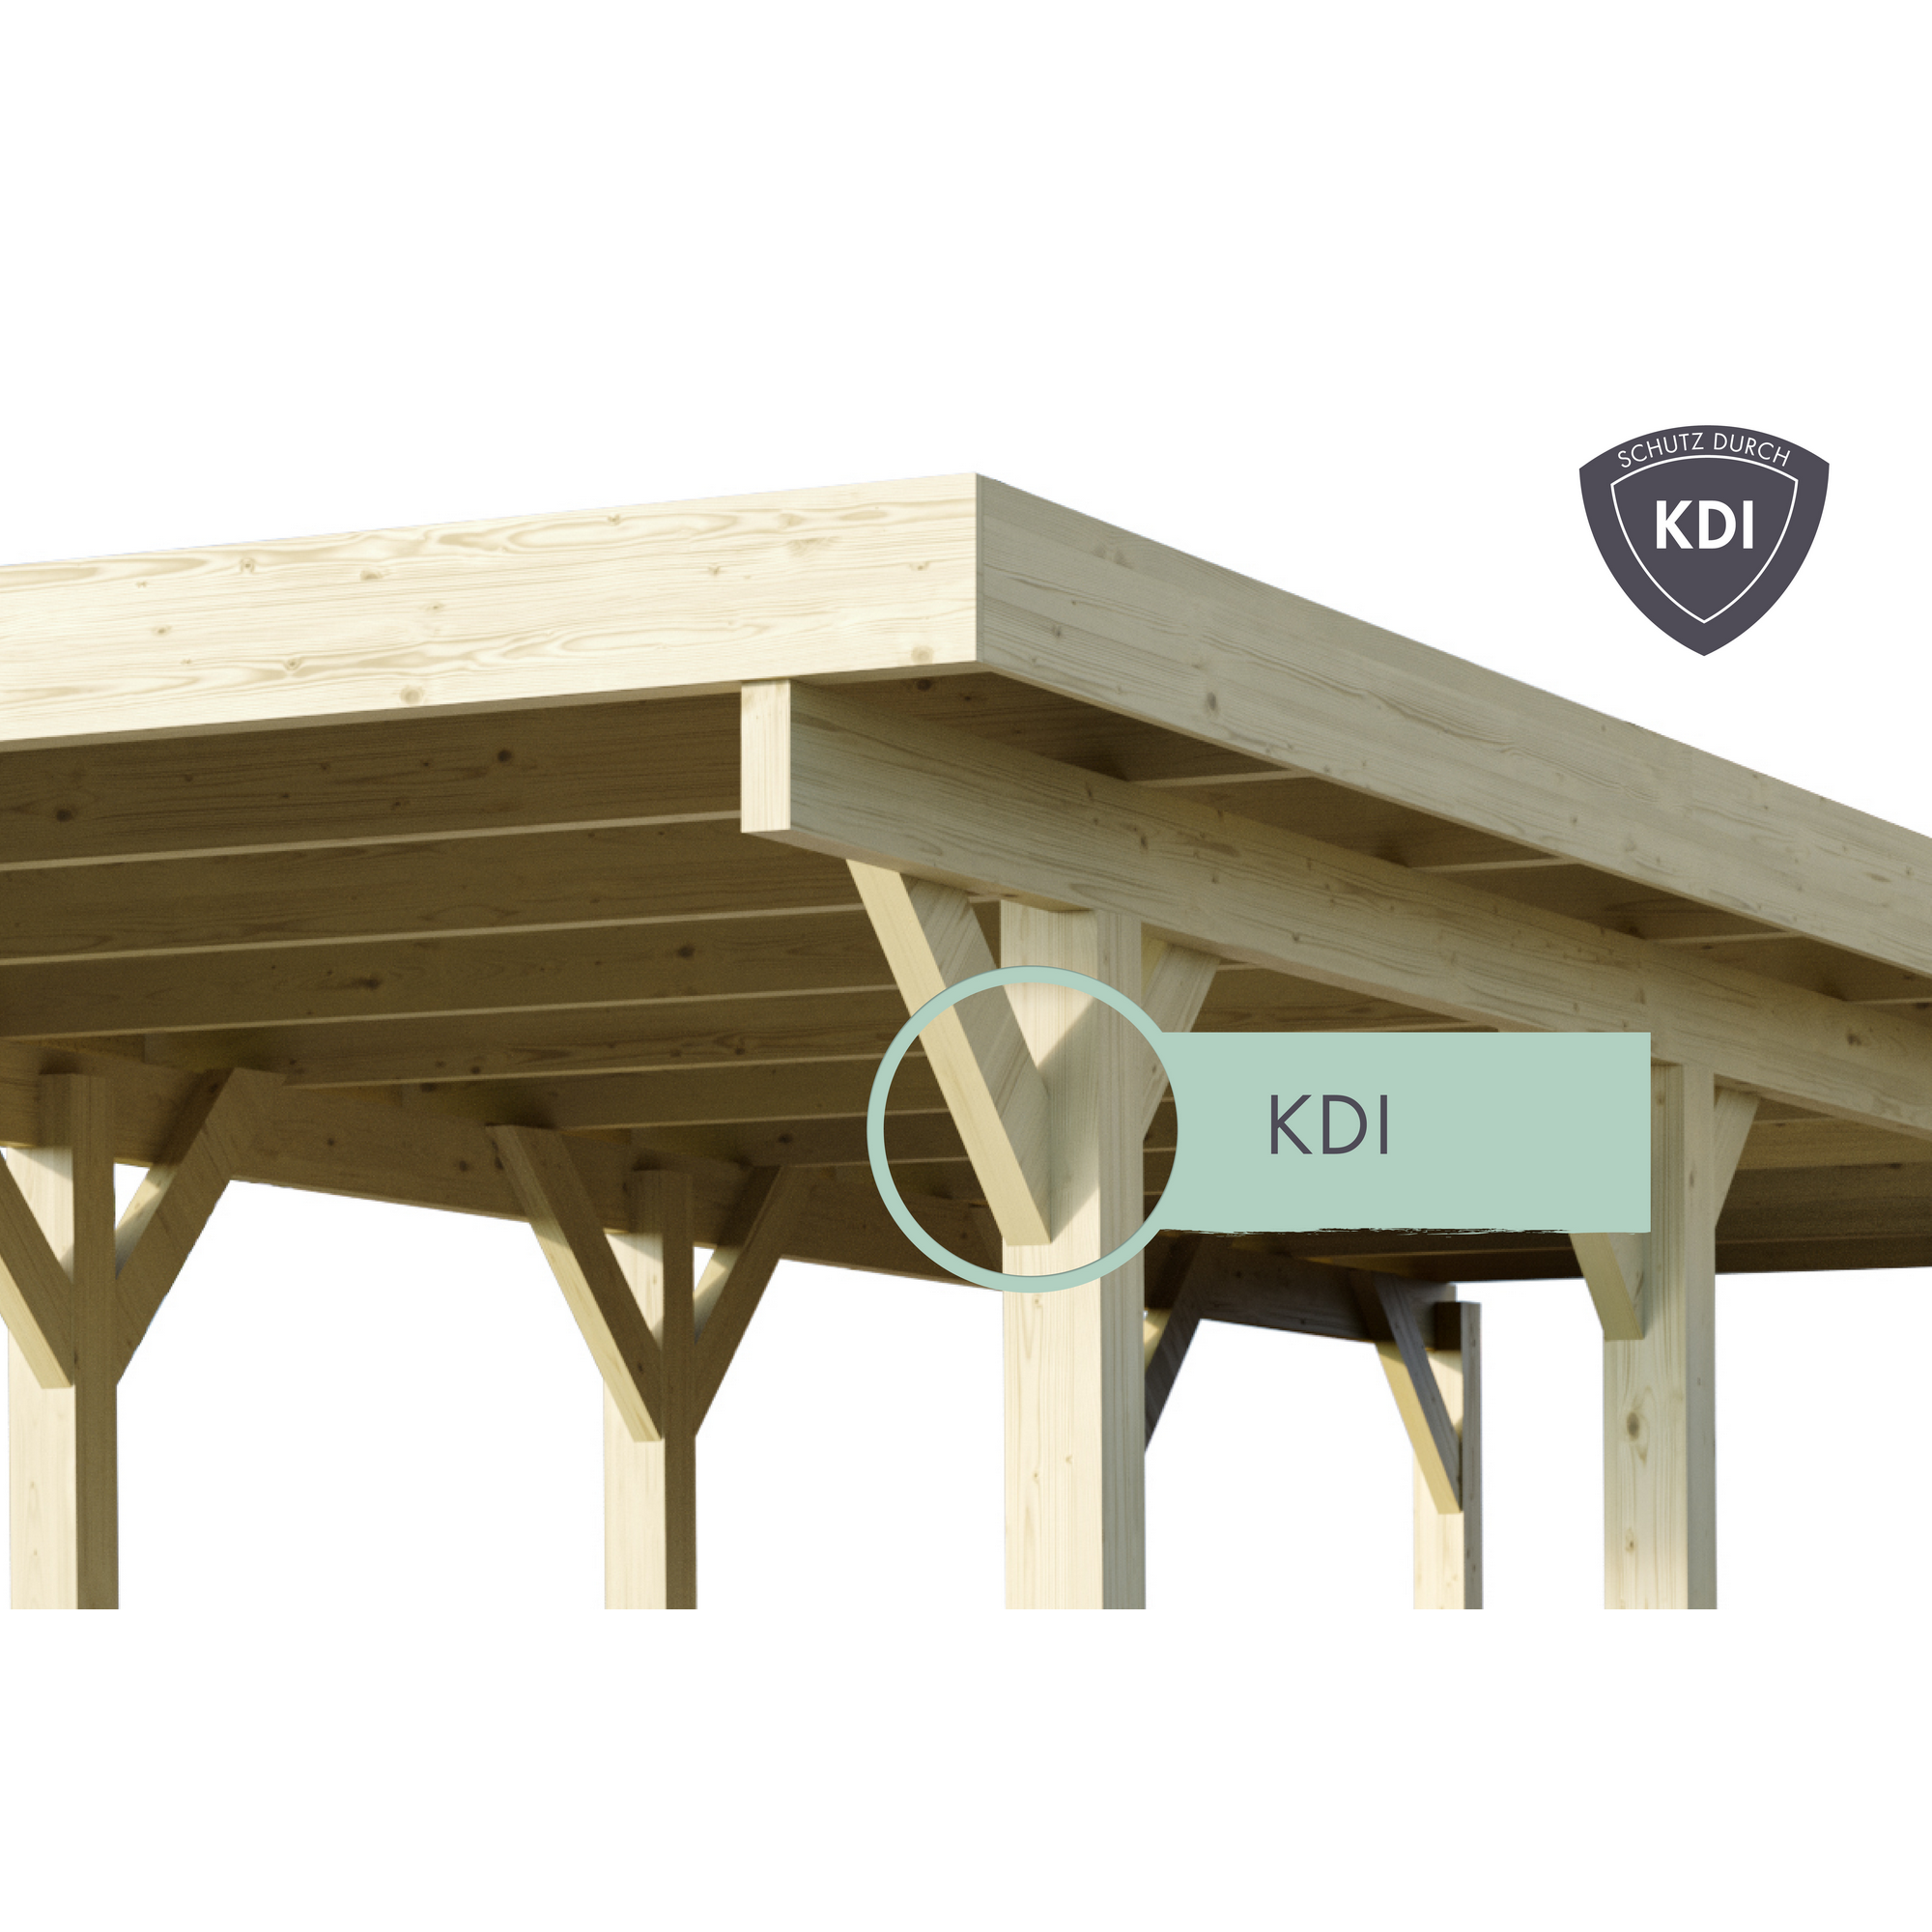 Doppelcarport 'Carlos 3' Kiefer PVC-Dach 860 x 598 x 237 cm + product picture